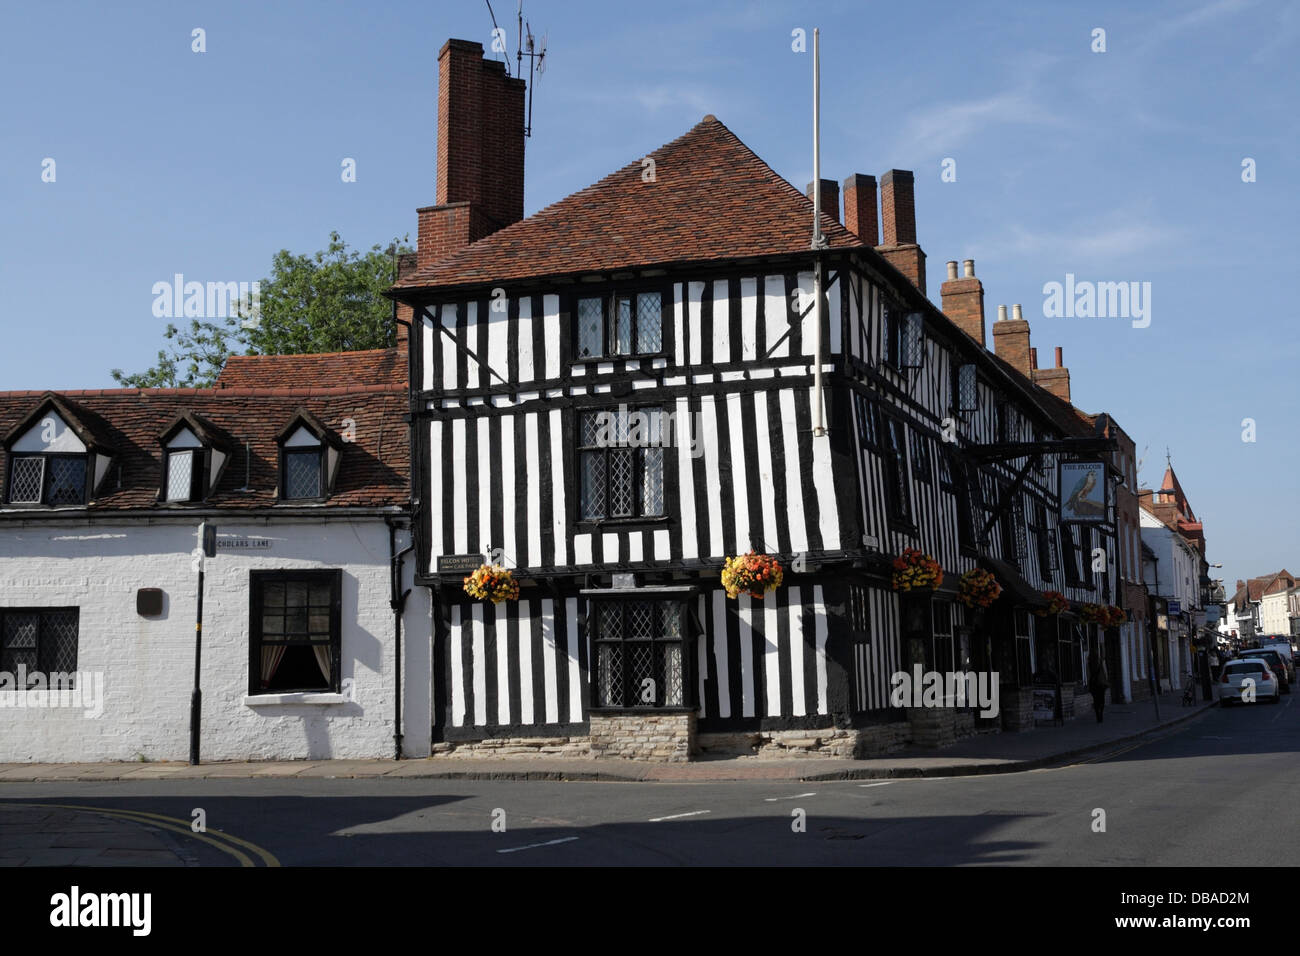 The Falcon Inn on Chapel Street a Stratford Upon Avon Inghilterra Regno Unito, architettura edificio storico in legno, casa pubblica inglese, edificio storico Foto Stock